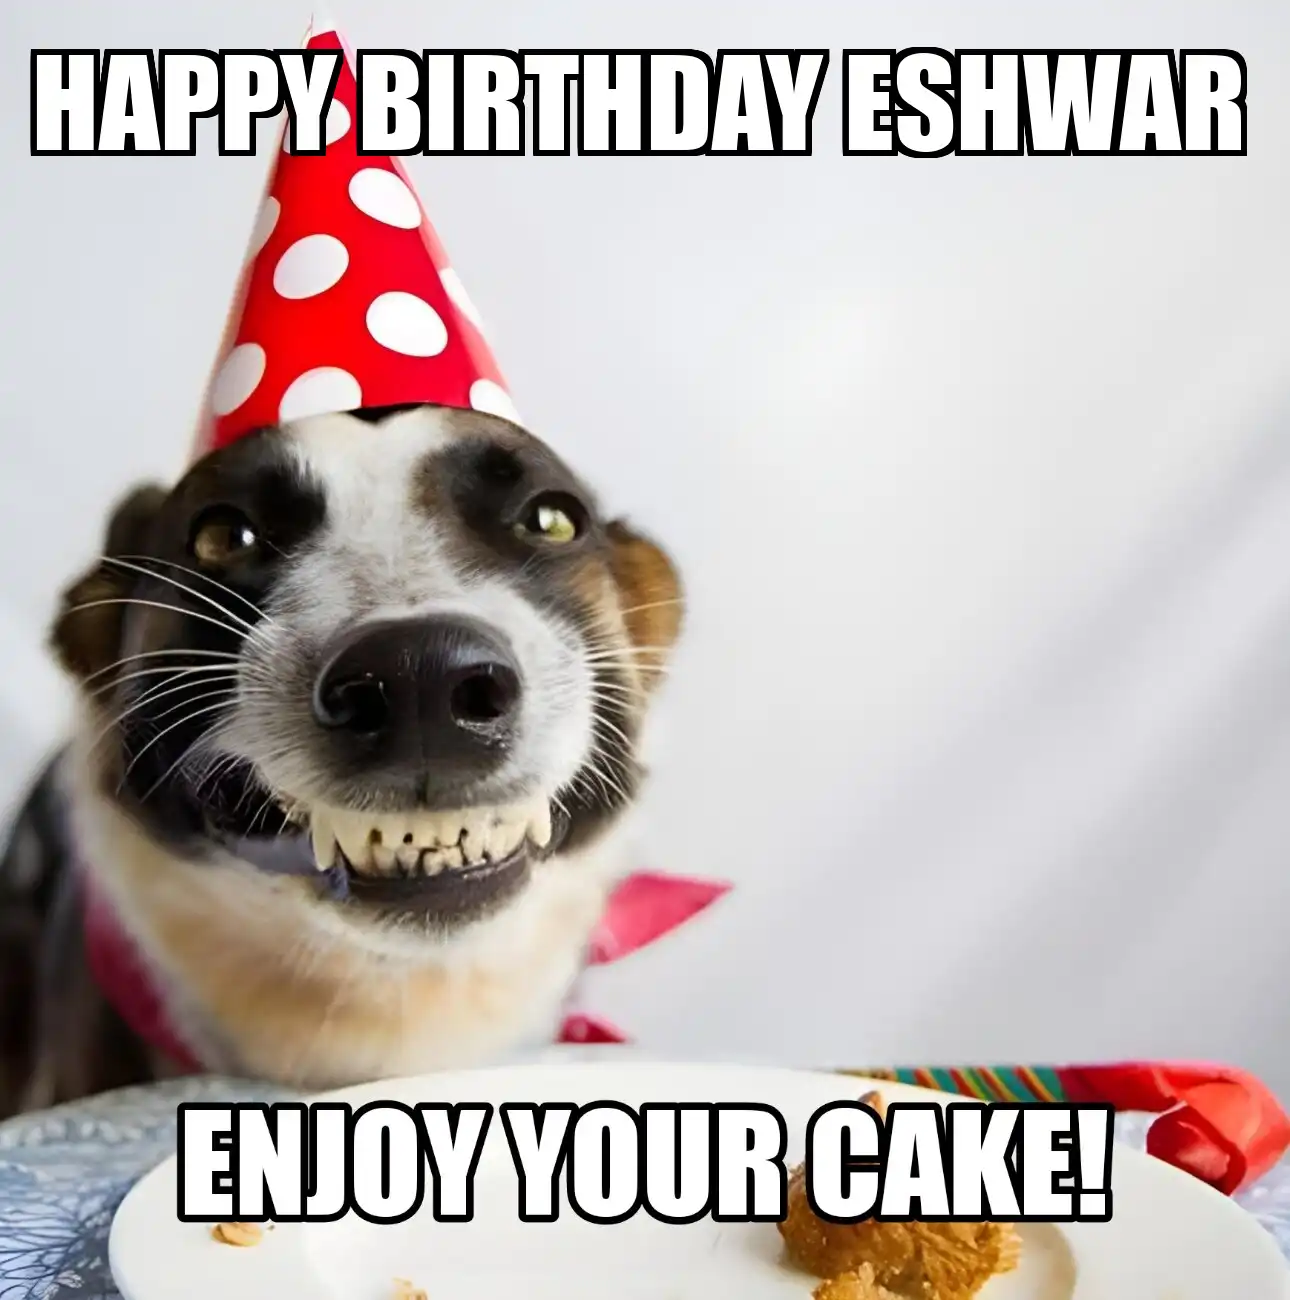 Happy Birthday Eshwar Enjoy Your Cake Dog Meme